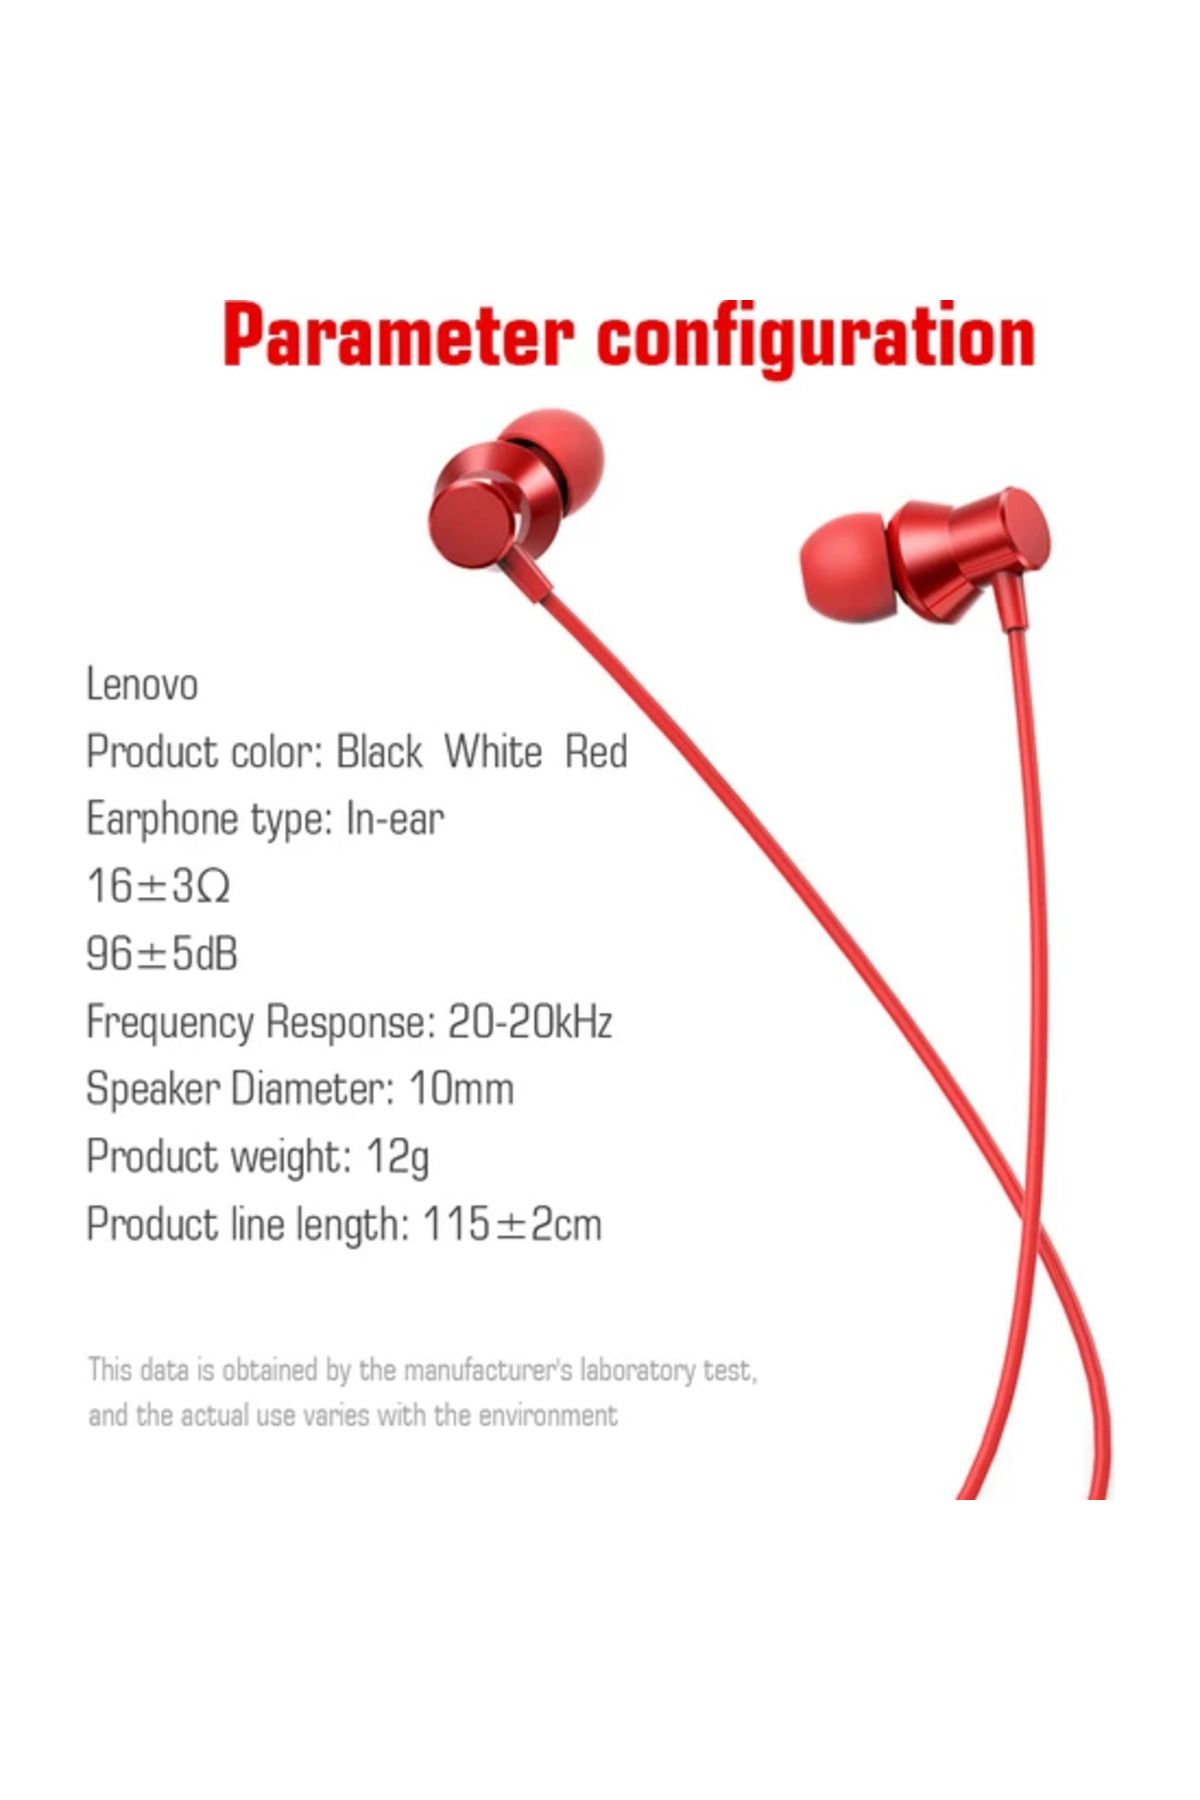 MELEKLER Lenovo HF130 Metal Kablolu Kulakiçi Kulaklık Kırmızı